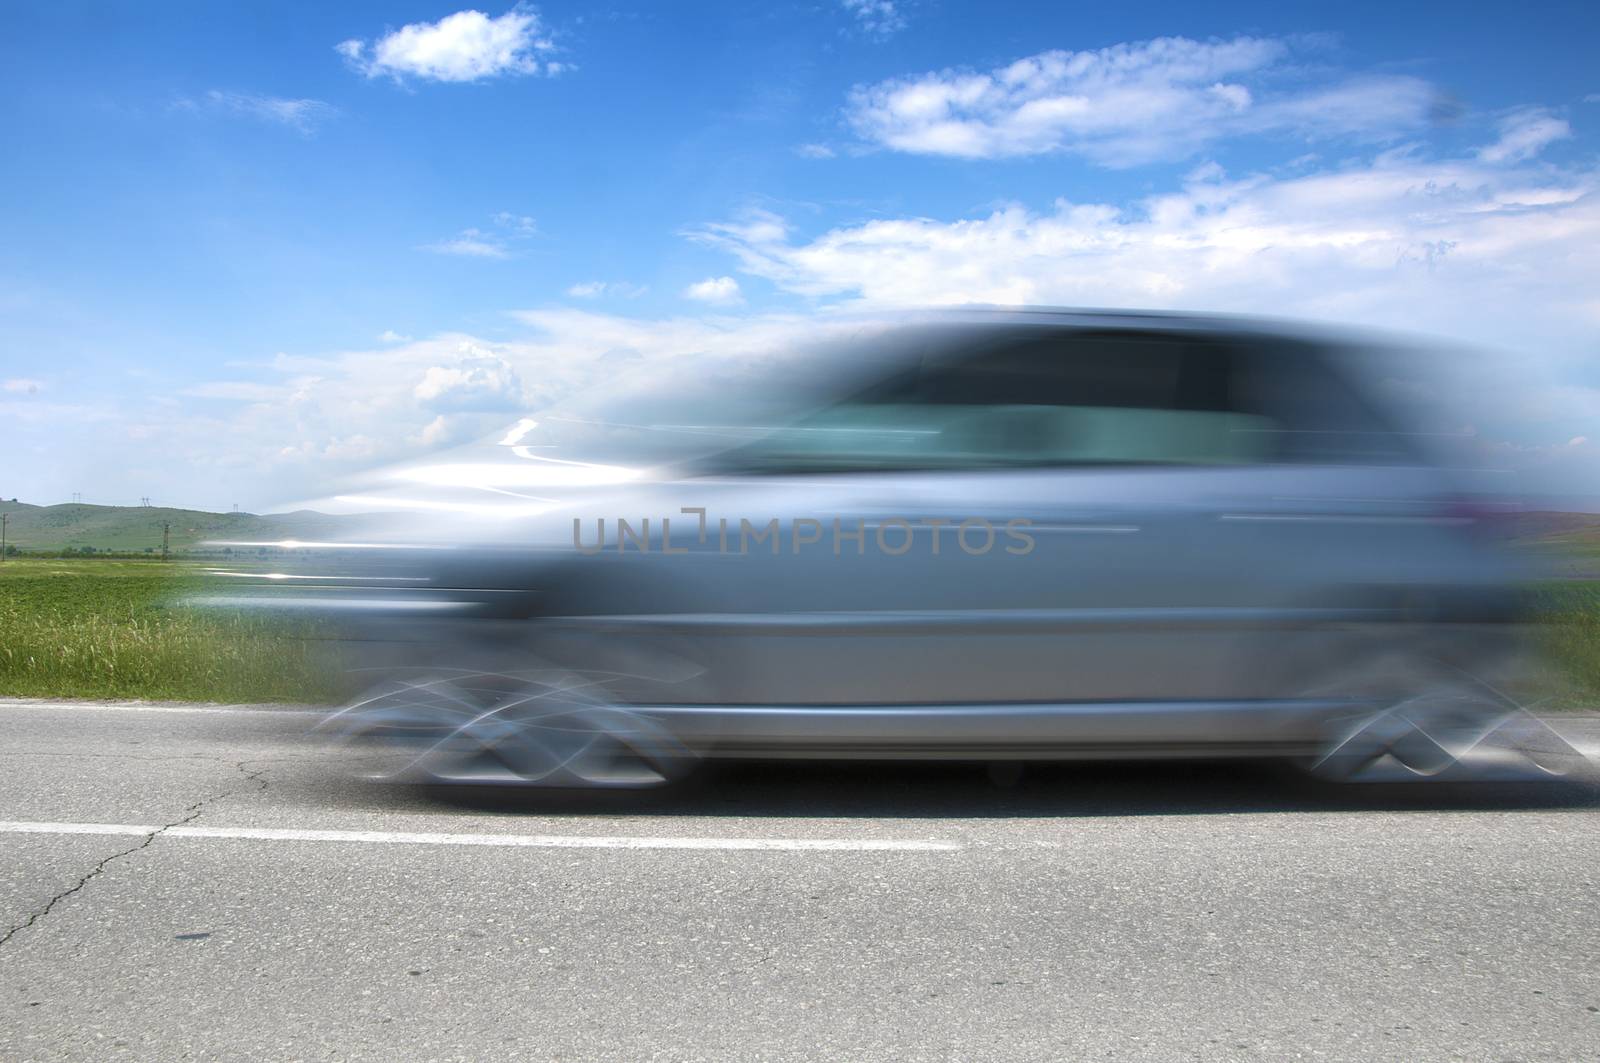 High speed blurred car by deyan_georgiev